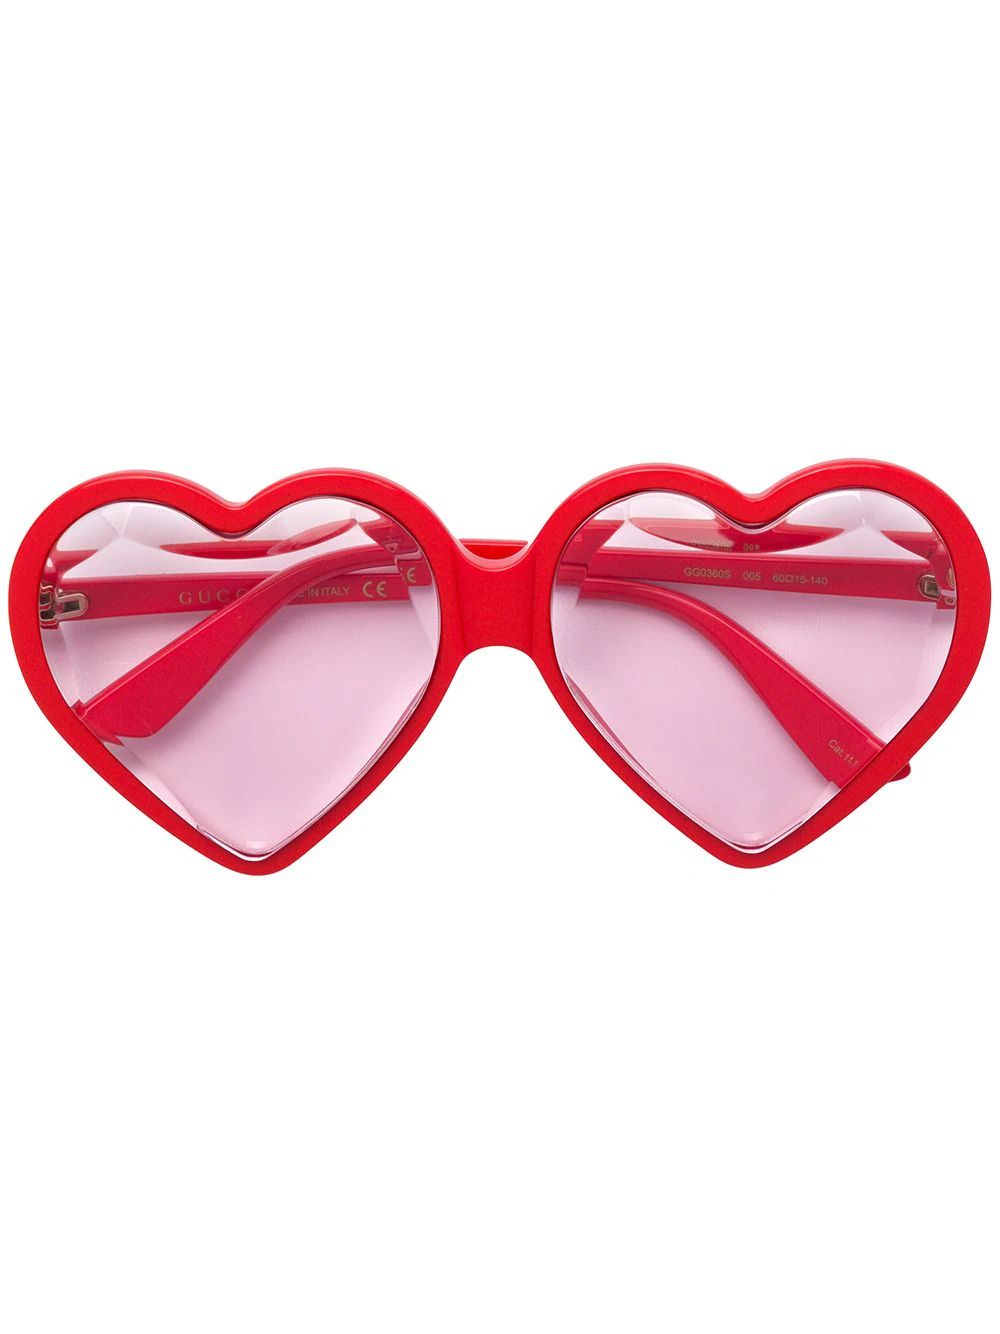 Gucci Eyewear jeweled heart shaped sunglasses - Red | FarFetch US